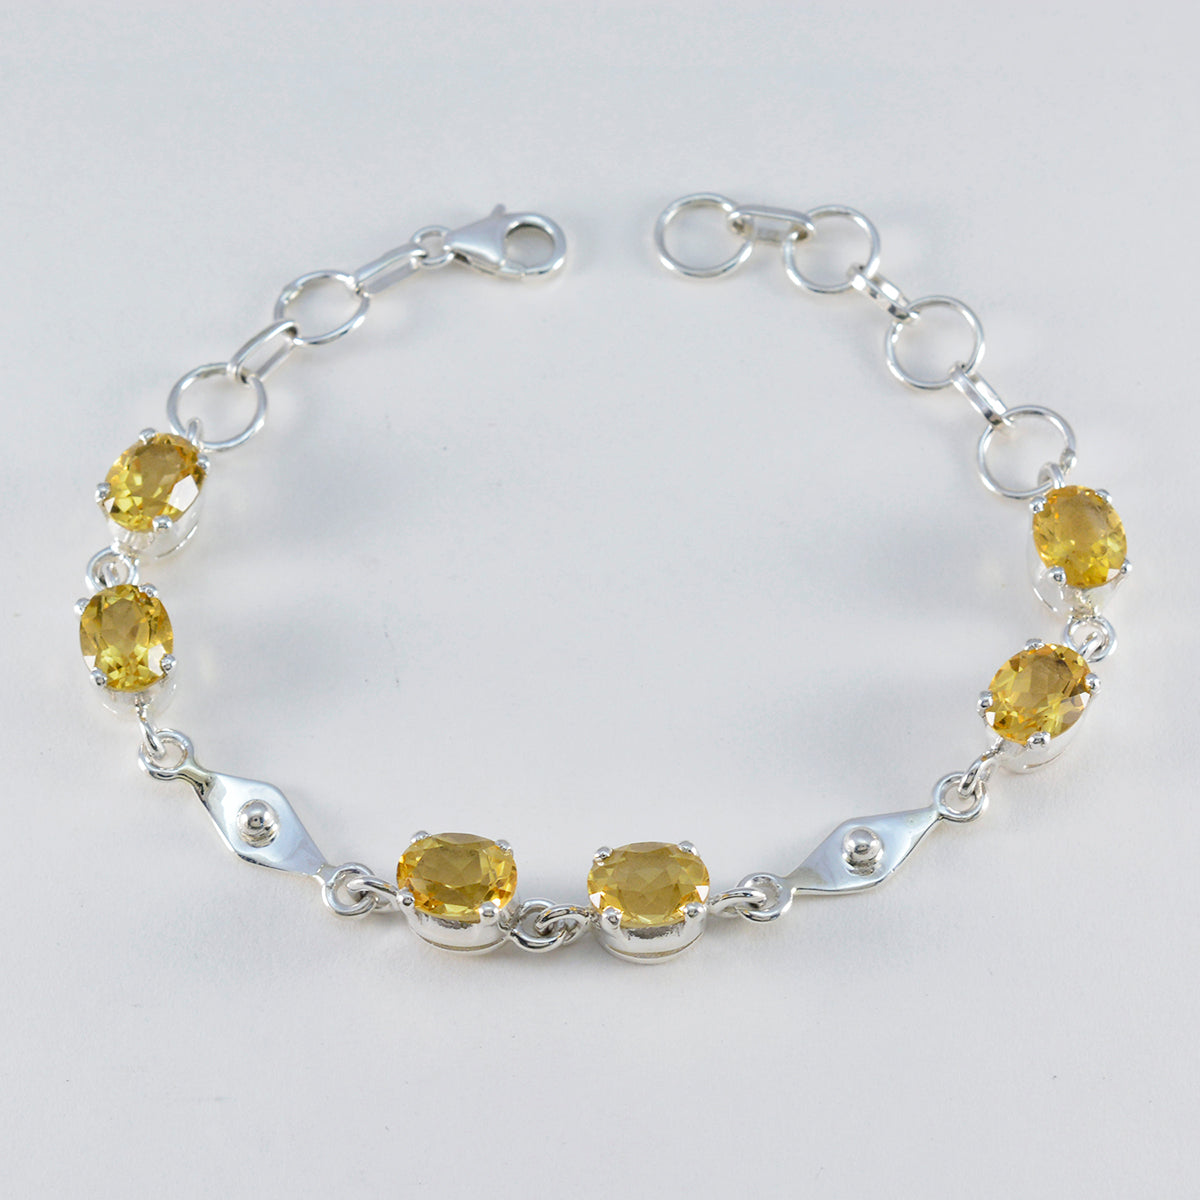 Riyo personnalisé 925 bracelet en argent sterling pour femme bracelet citrine bracelet à sertir avec hameçon bracelet à maillons l taille 6-8,5 pouces.